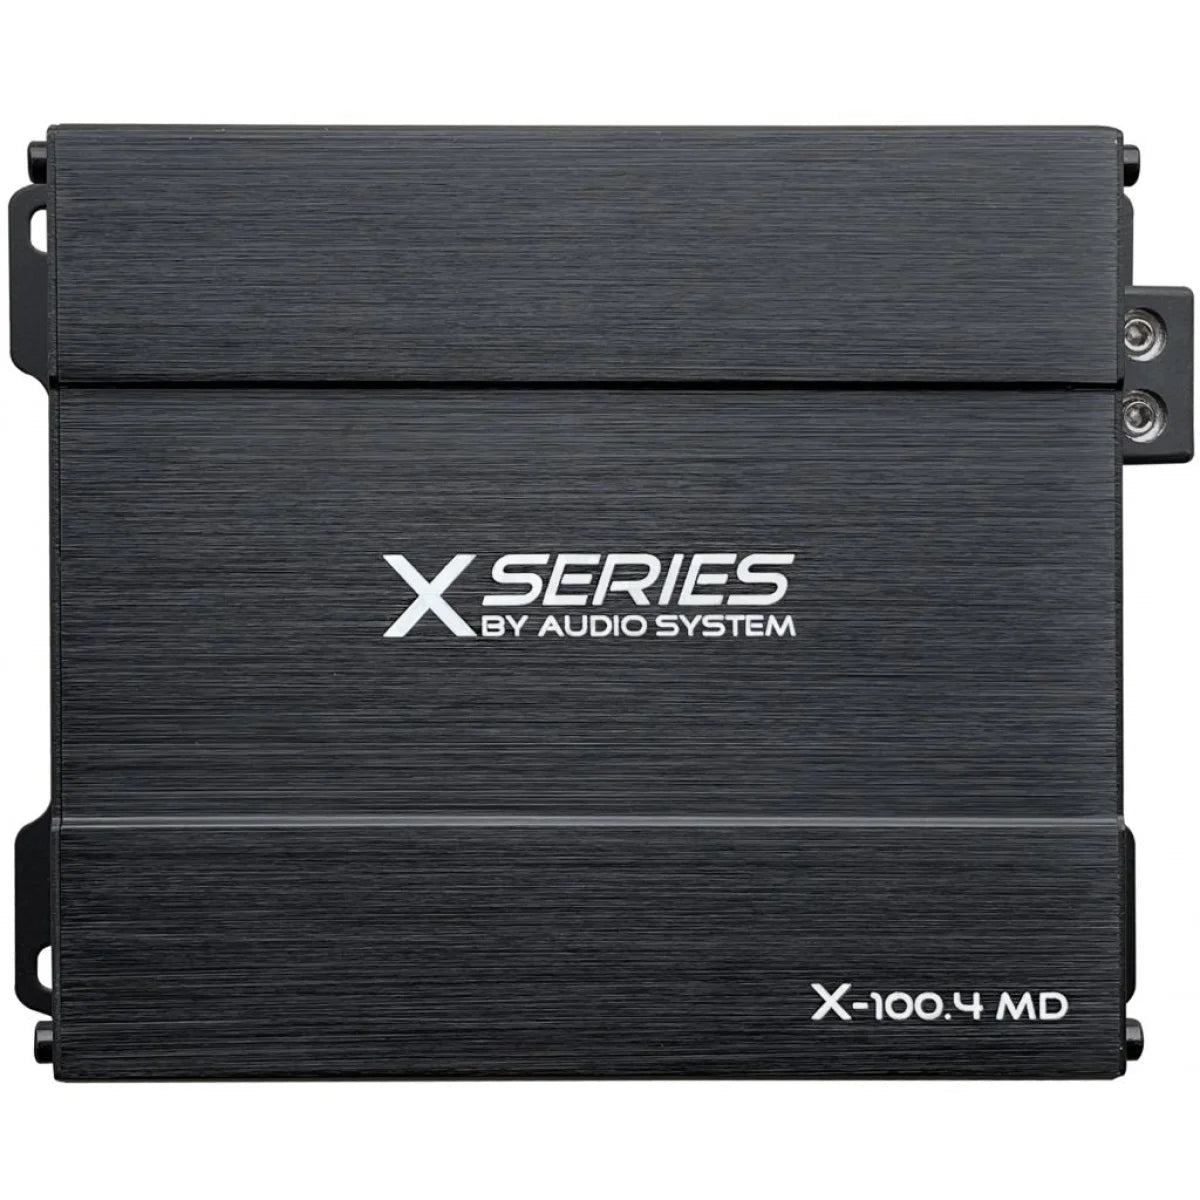 AUDIO Verstärker SYSTEM 4-Kanal MD X-100.4